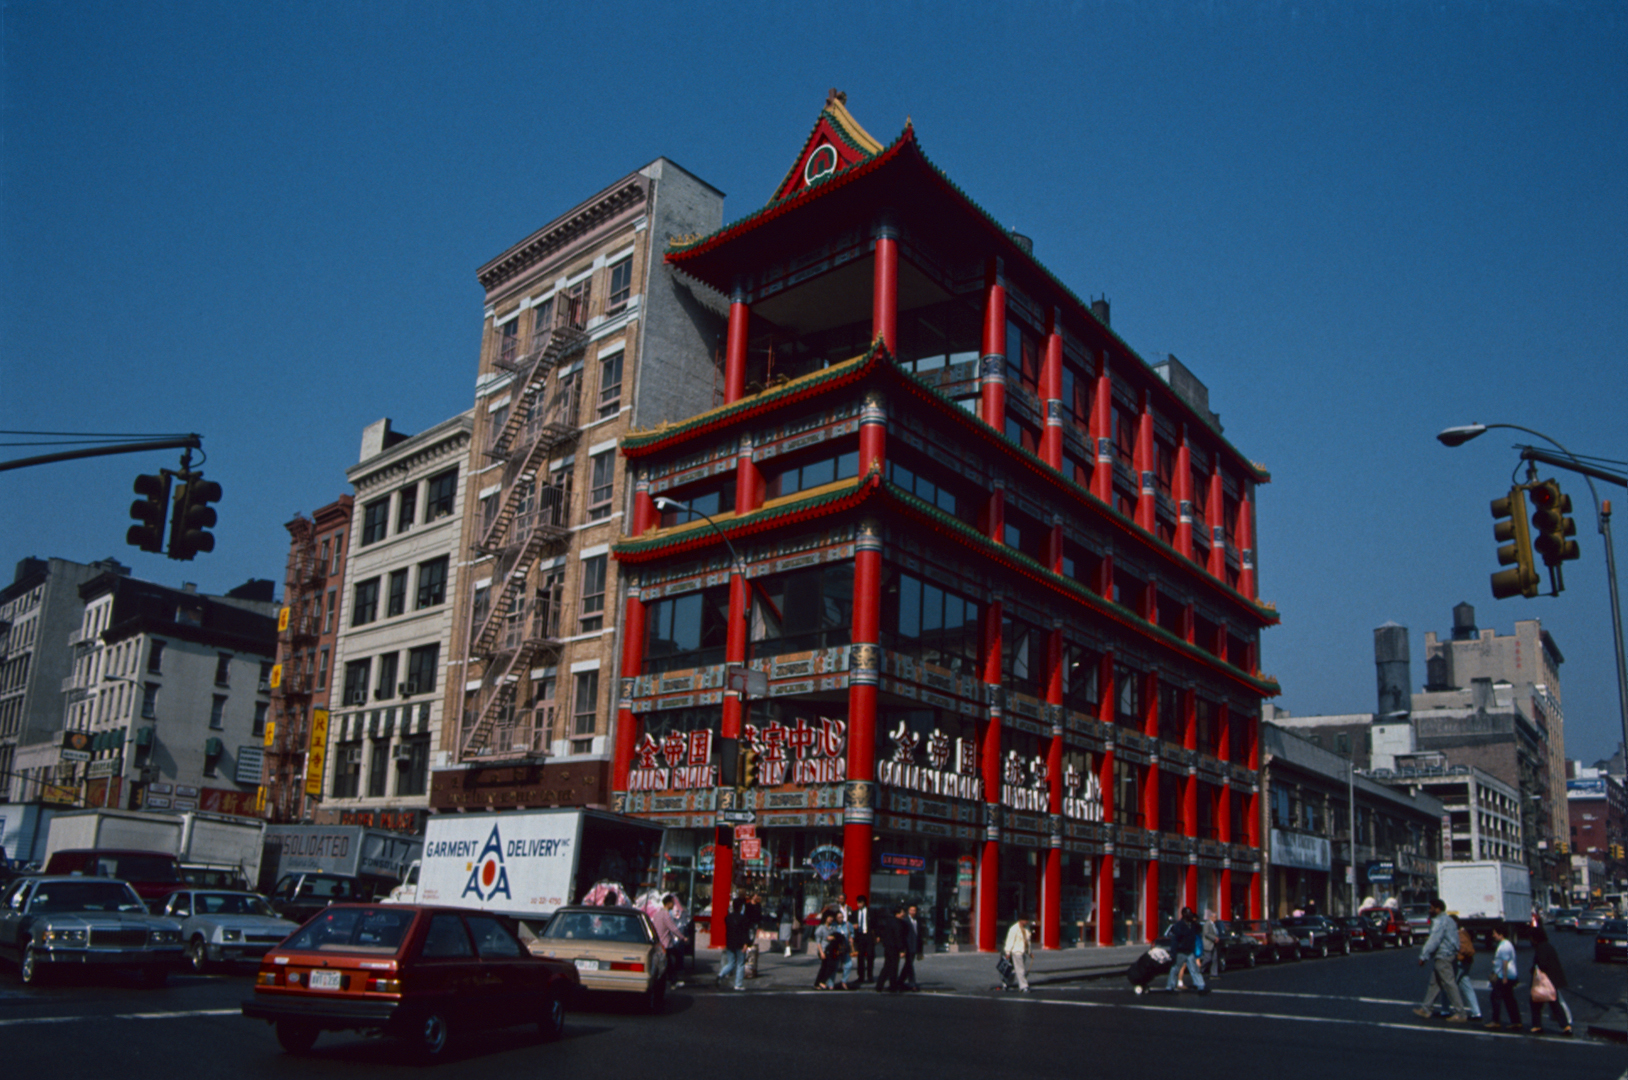 New York City, Manhattan, Chinatown 1989